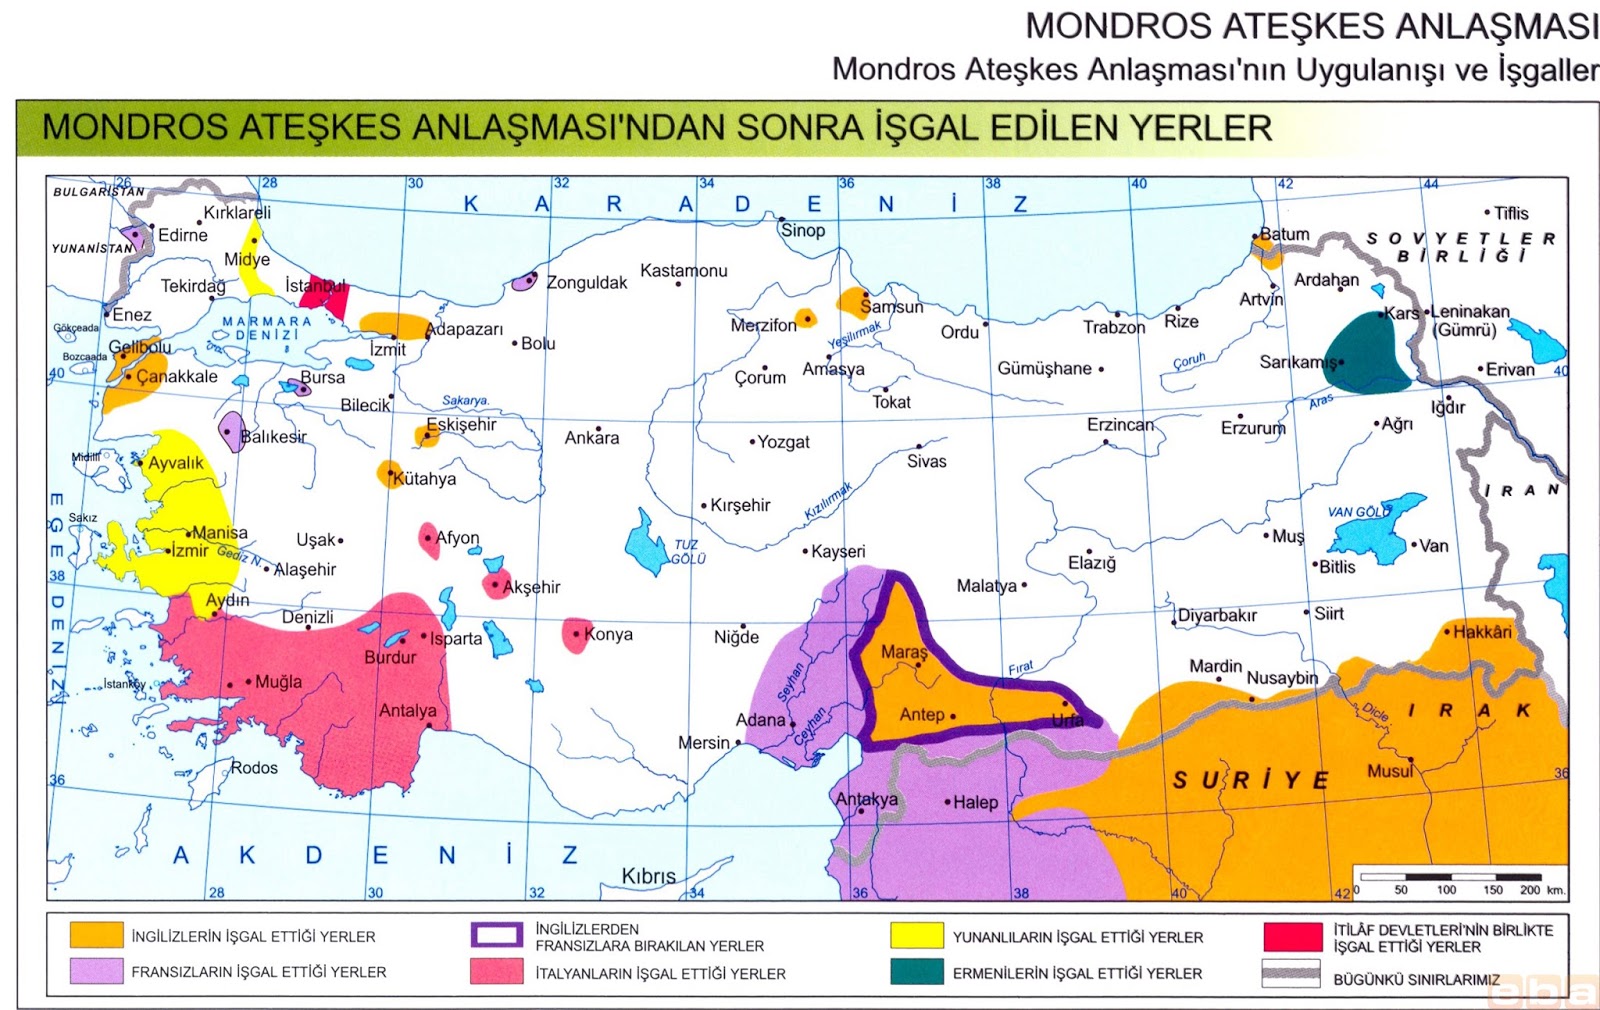 57-Mondros ateşkes anlaşmasından sonra işgal edilen yerler .jpg